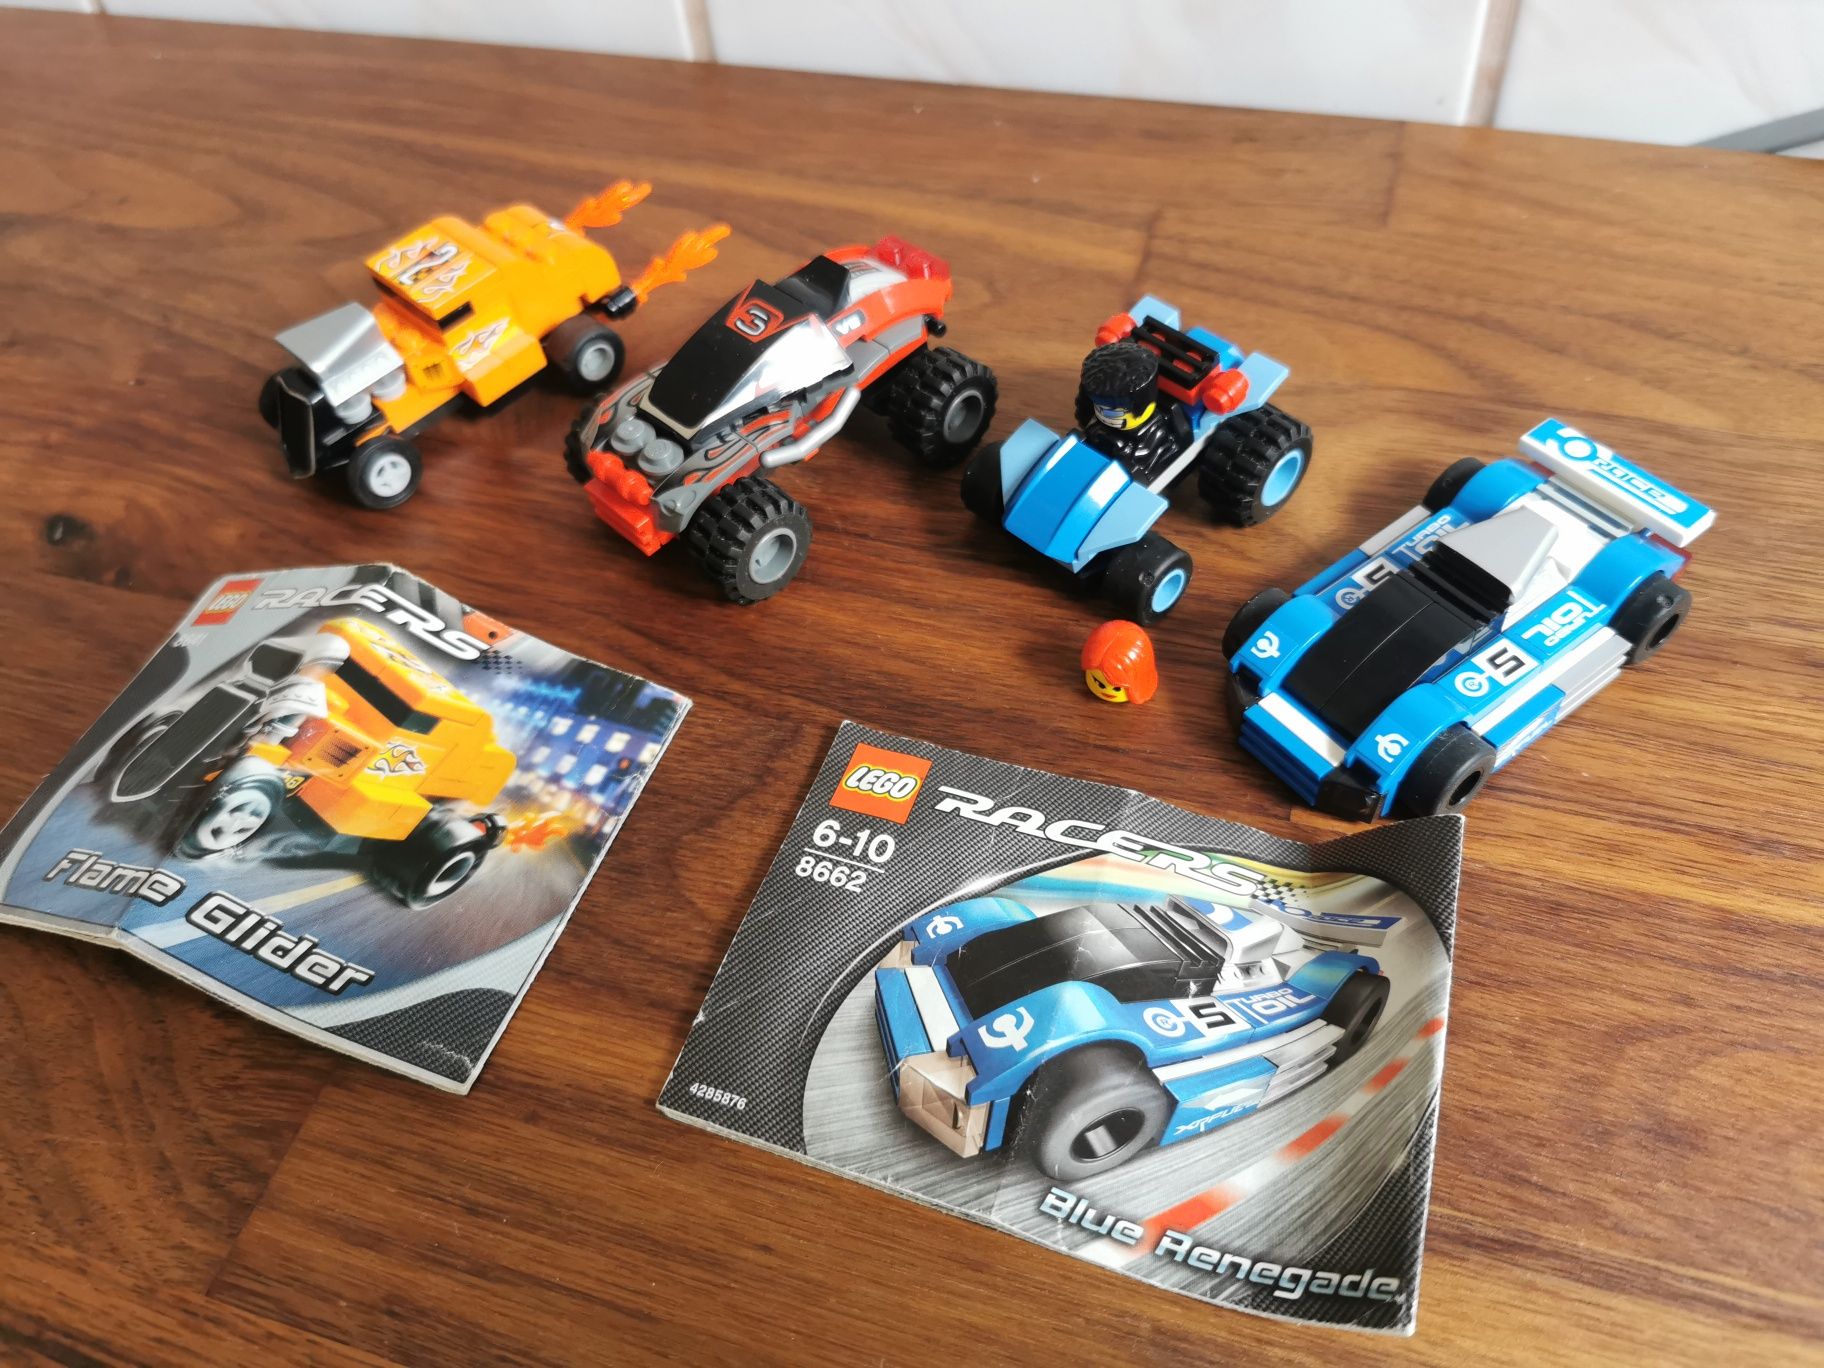 Komplet 8641 Lego 8642 Racers 8662 Samochody 4301 wyścigowe